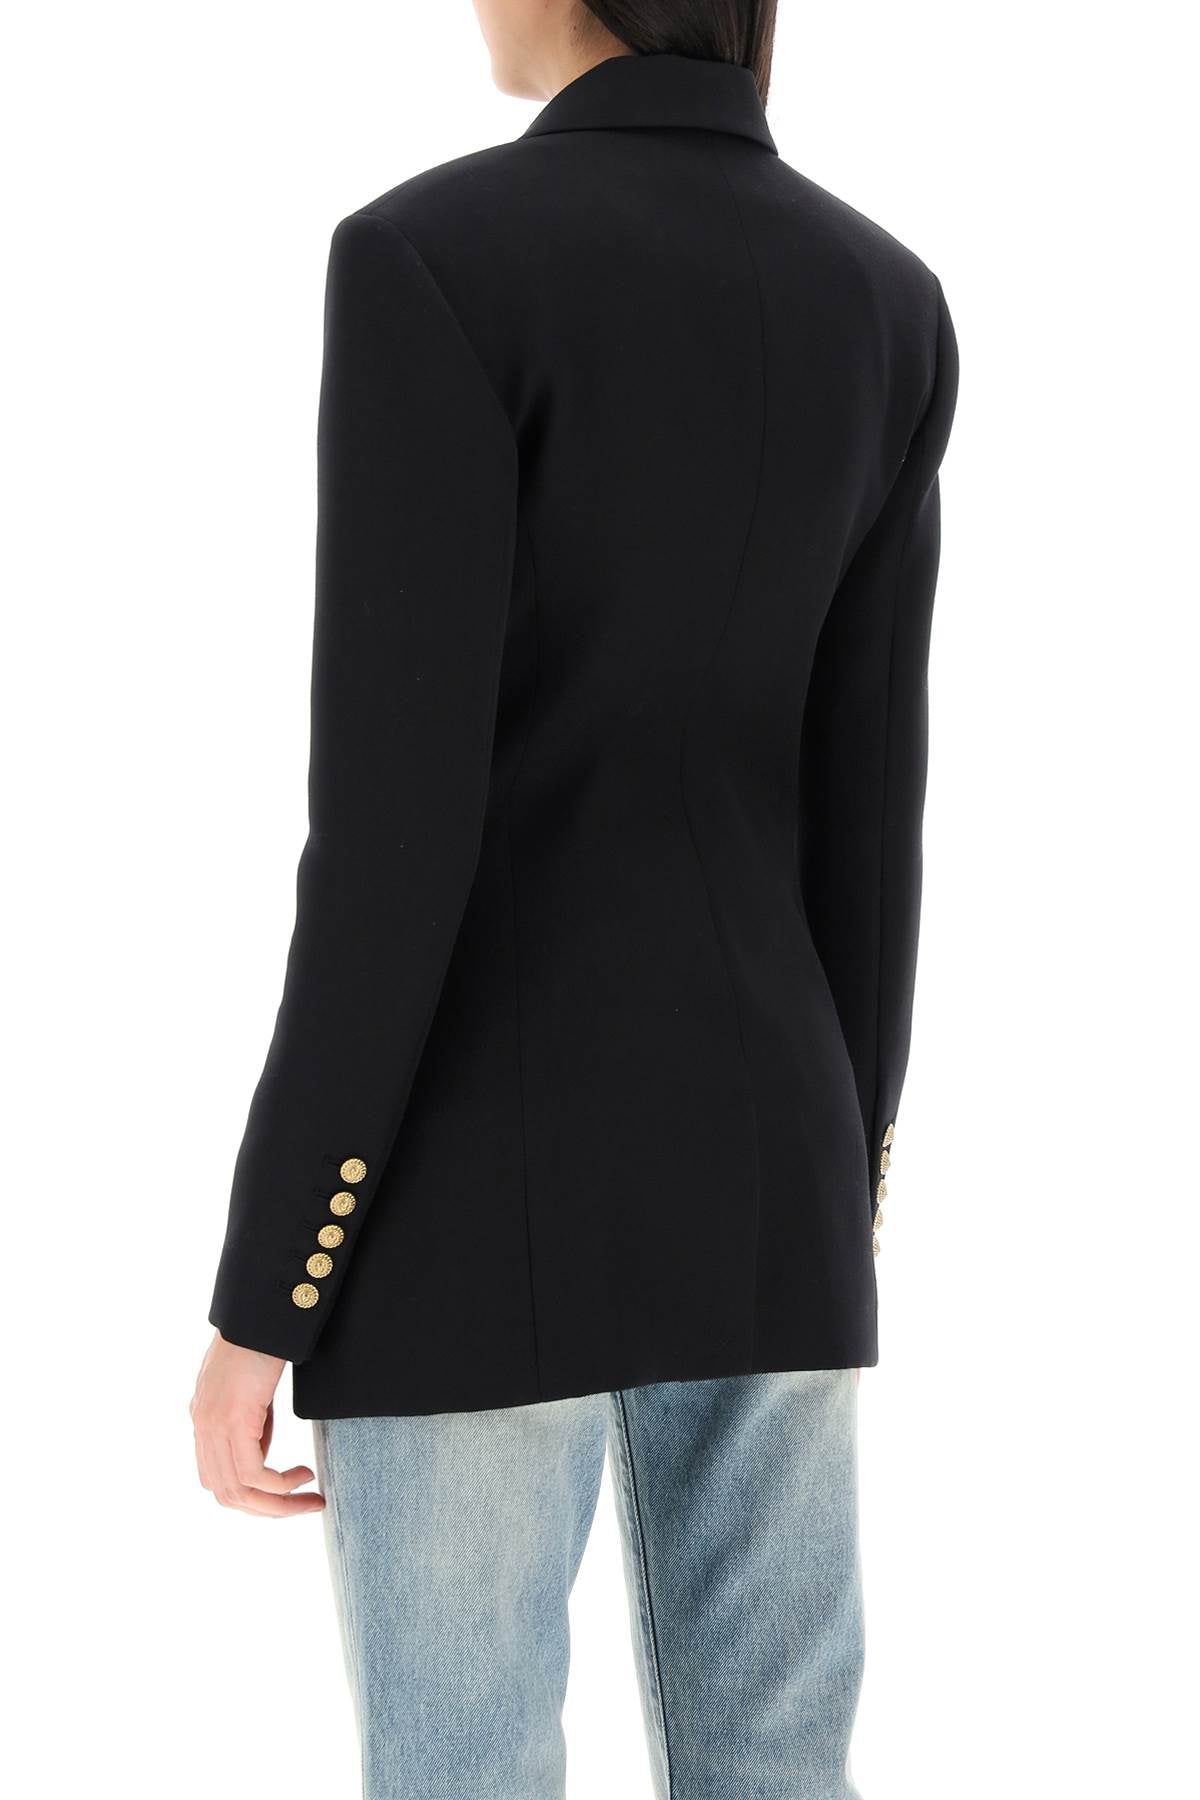 Áo khoác lông cừu đen tinh tế dành cho phụ nữ - Chất lượng cao cấp với khóa nút đính huy hiệu sư tử màu vàng nổi bật, kiểu dáng vừa vặn và cổ áo có cấu trúc